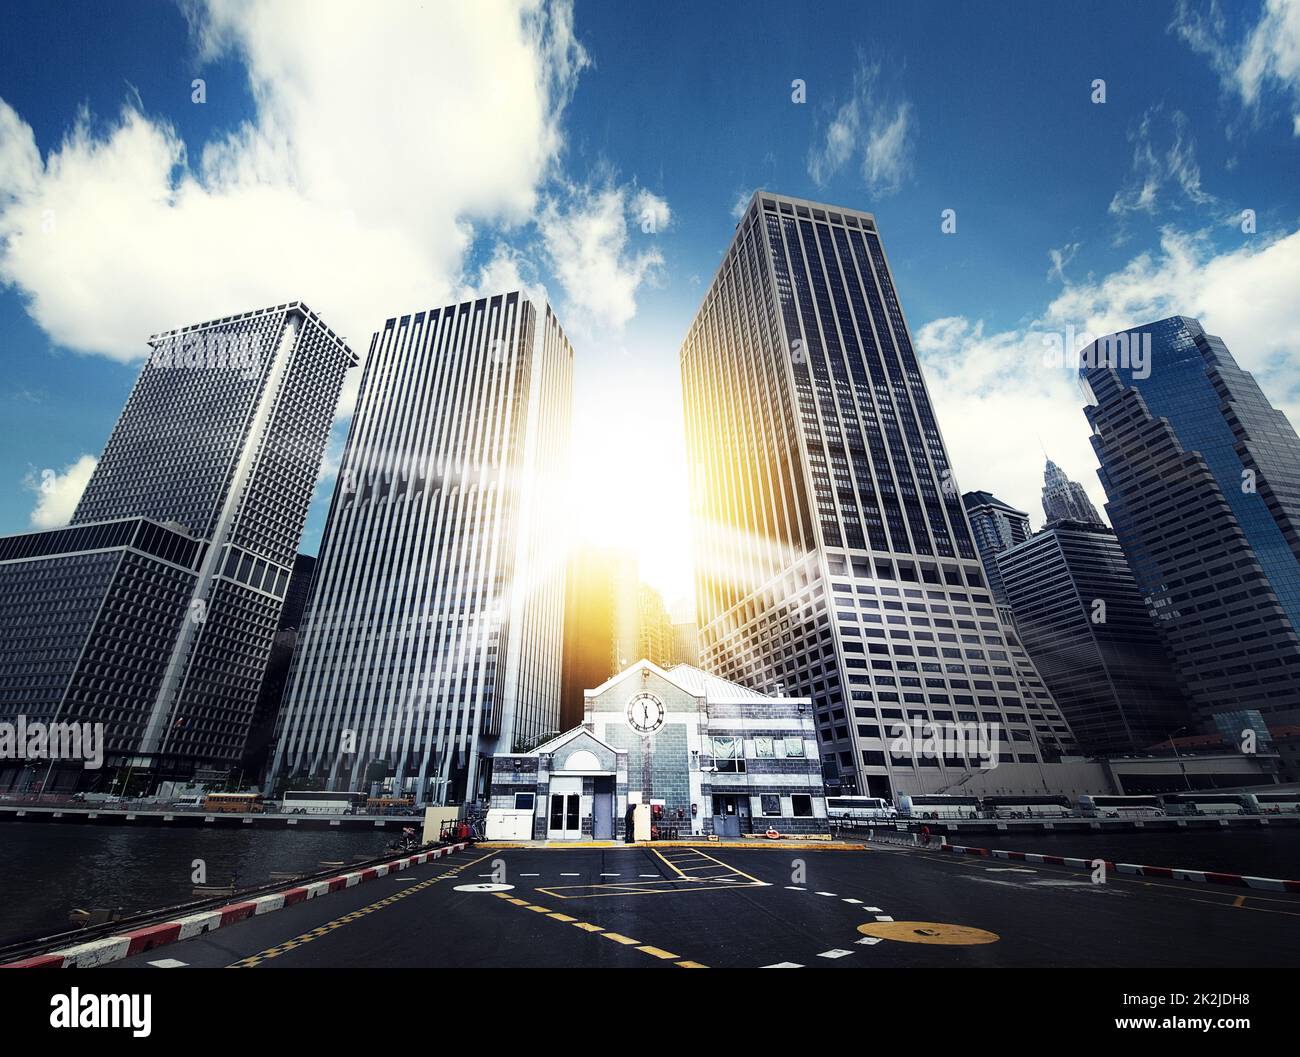 Nel cuore del mondo degli affari. Foto di edifici alti in un quartiere urbano degli affari. Foto Stock